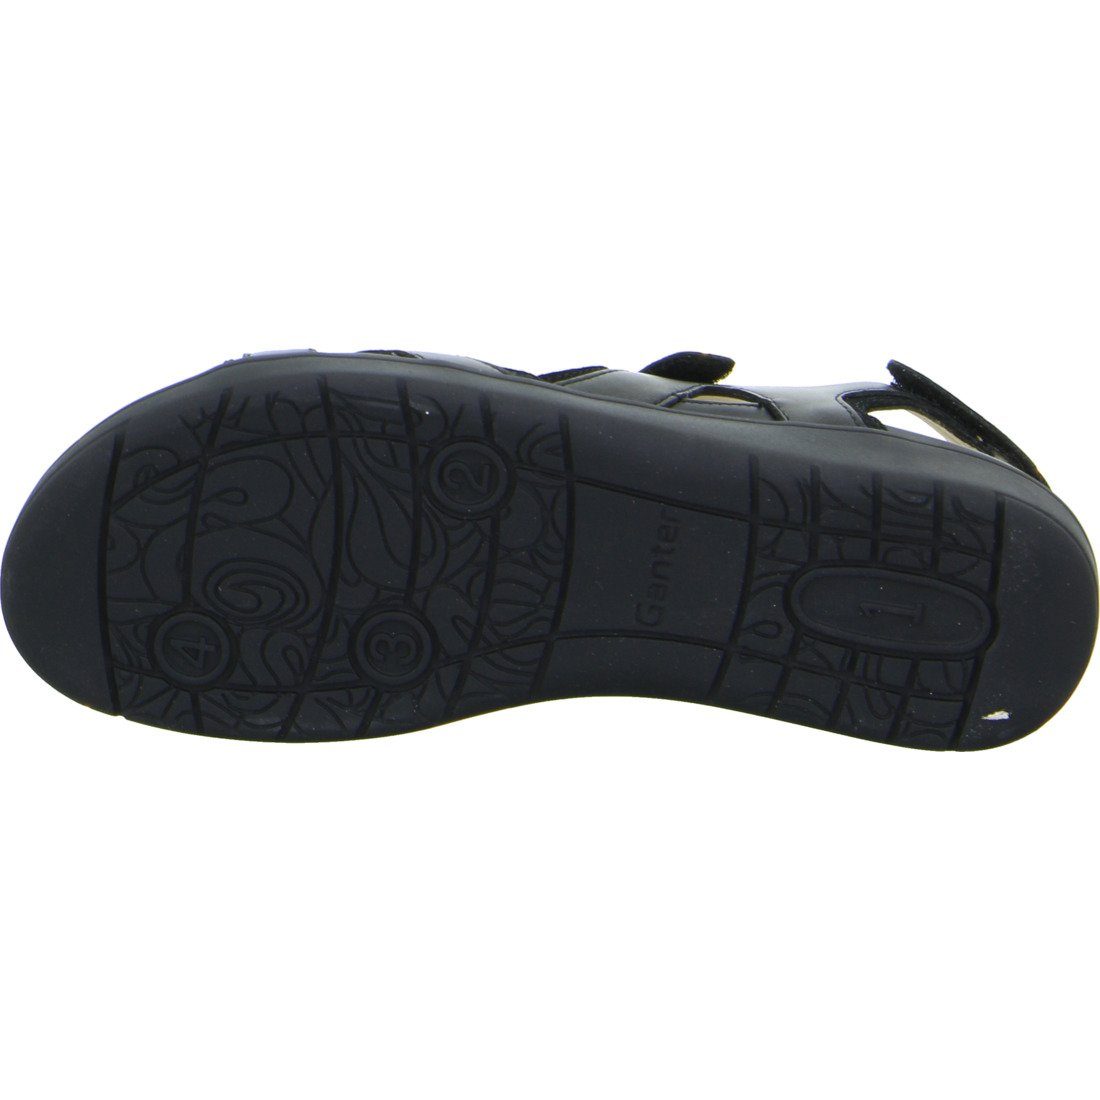 Schuhe, schwarz 048810 - Sandalette Ganter Sandalette Ganter Glattleder Gina